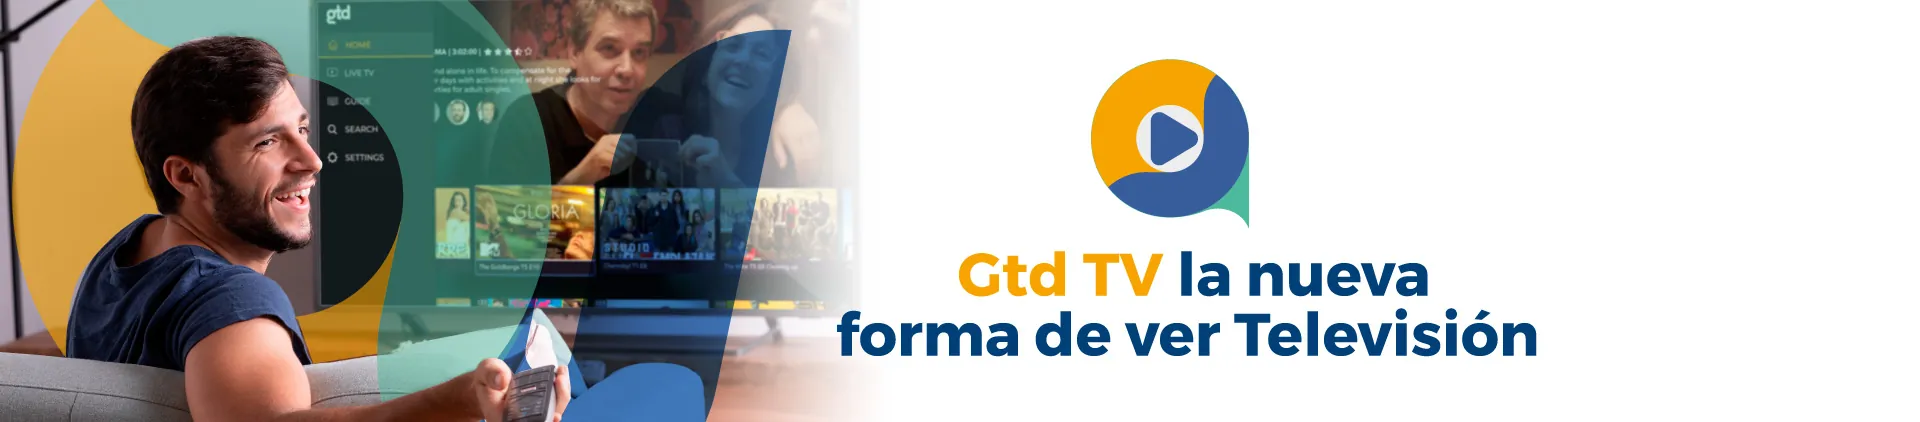 Una persona viendo Gtd TV en su televisor mas el logo de Gtd tv